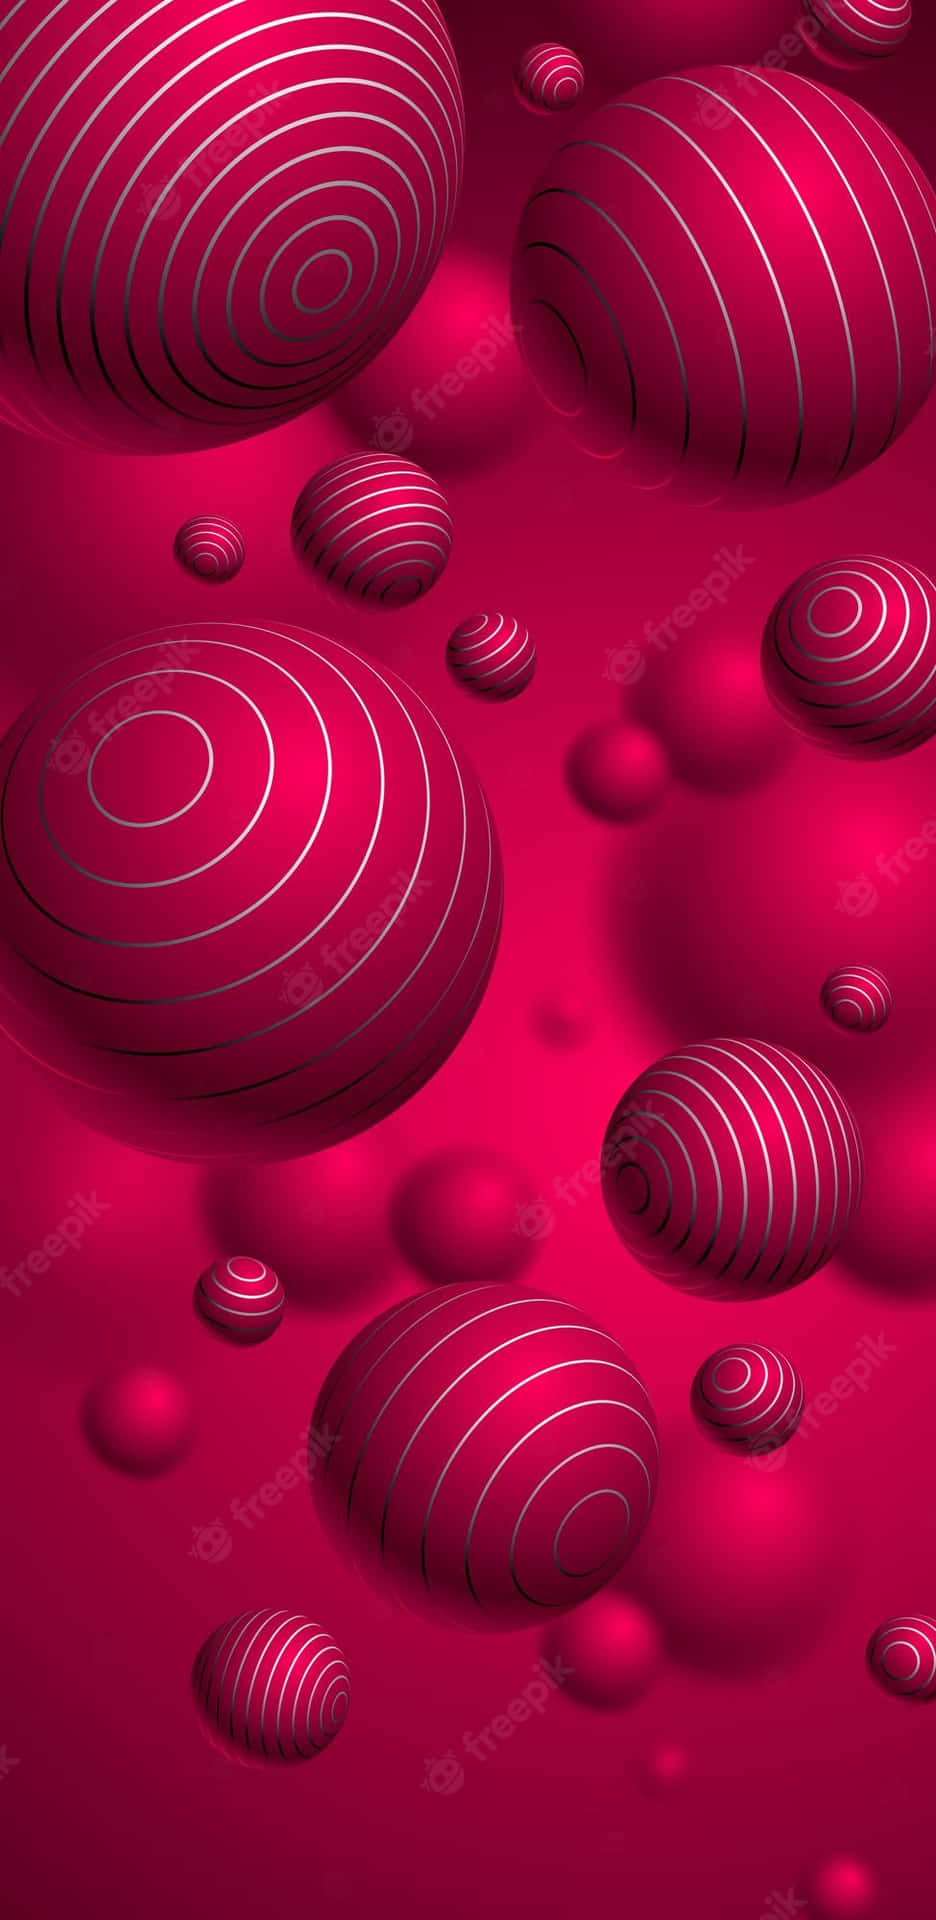 Handy Artist For Pink Balls Wallpaper